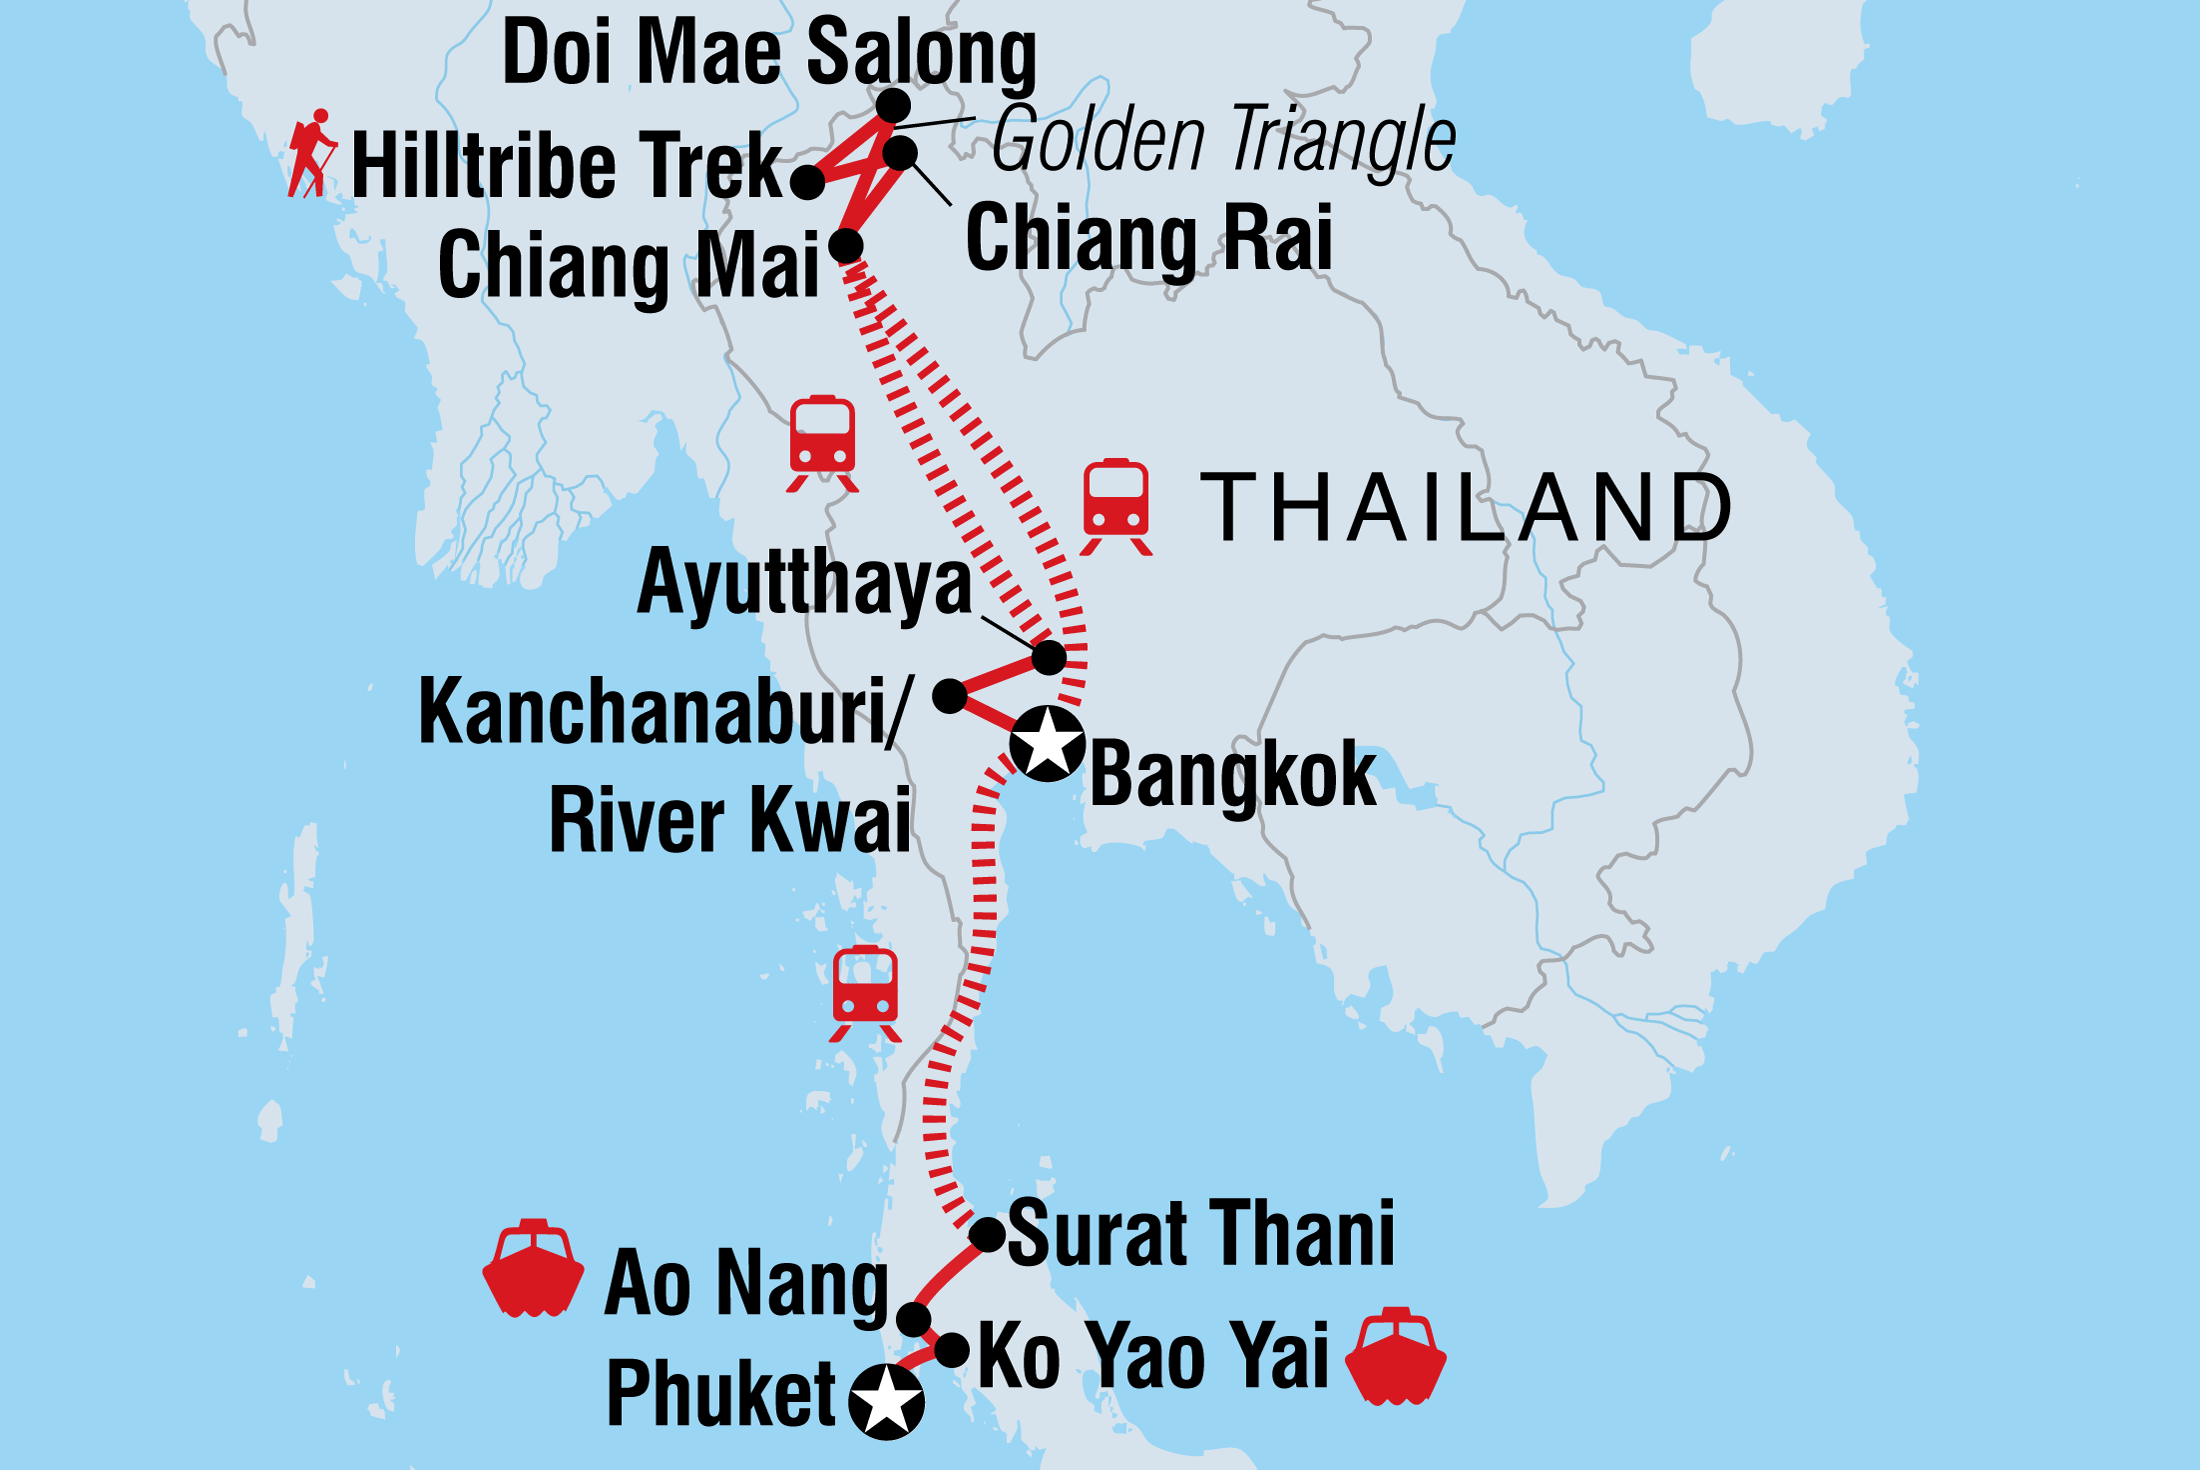 Detail Surat Thani Thailand Map Nomer 27